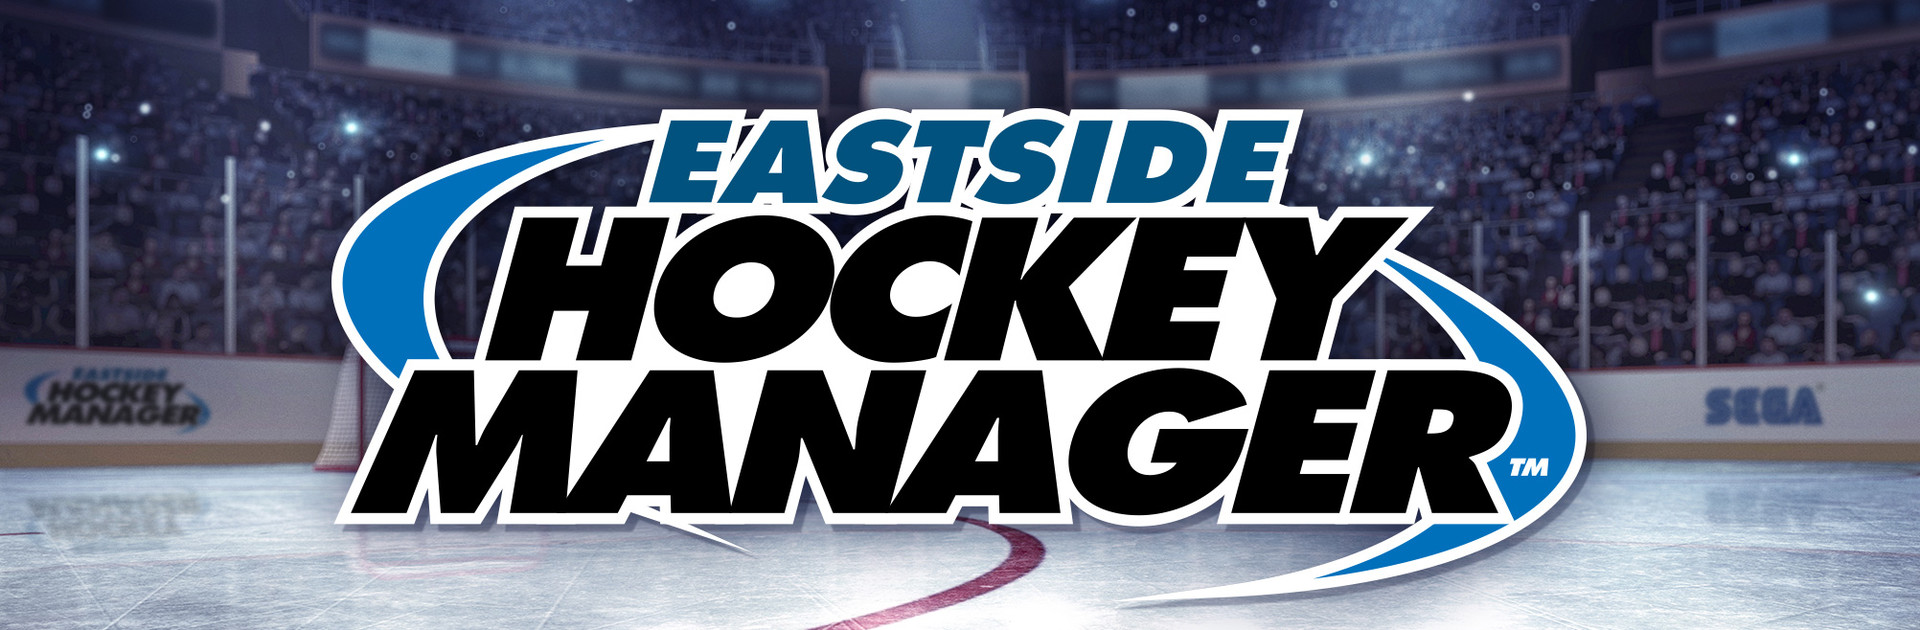 Eastside Hockey Manager ve službě Steam